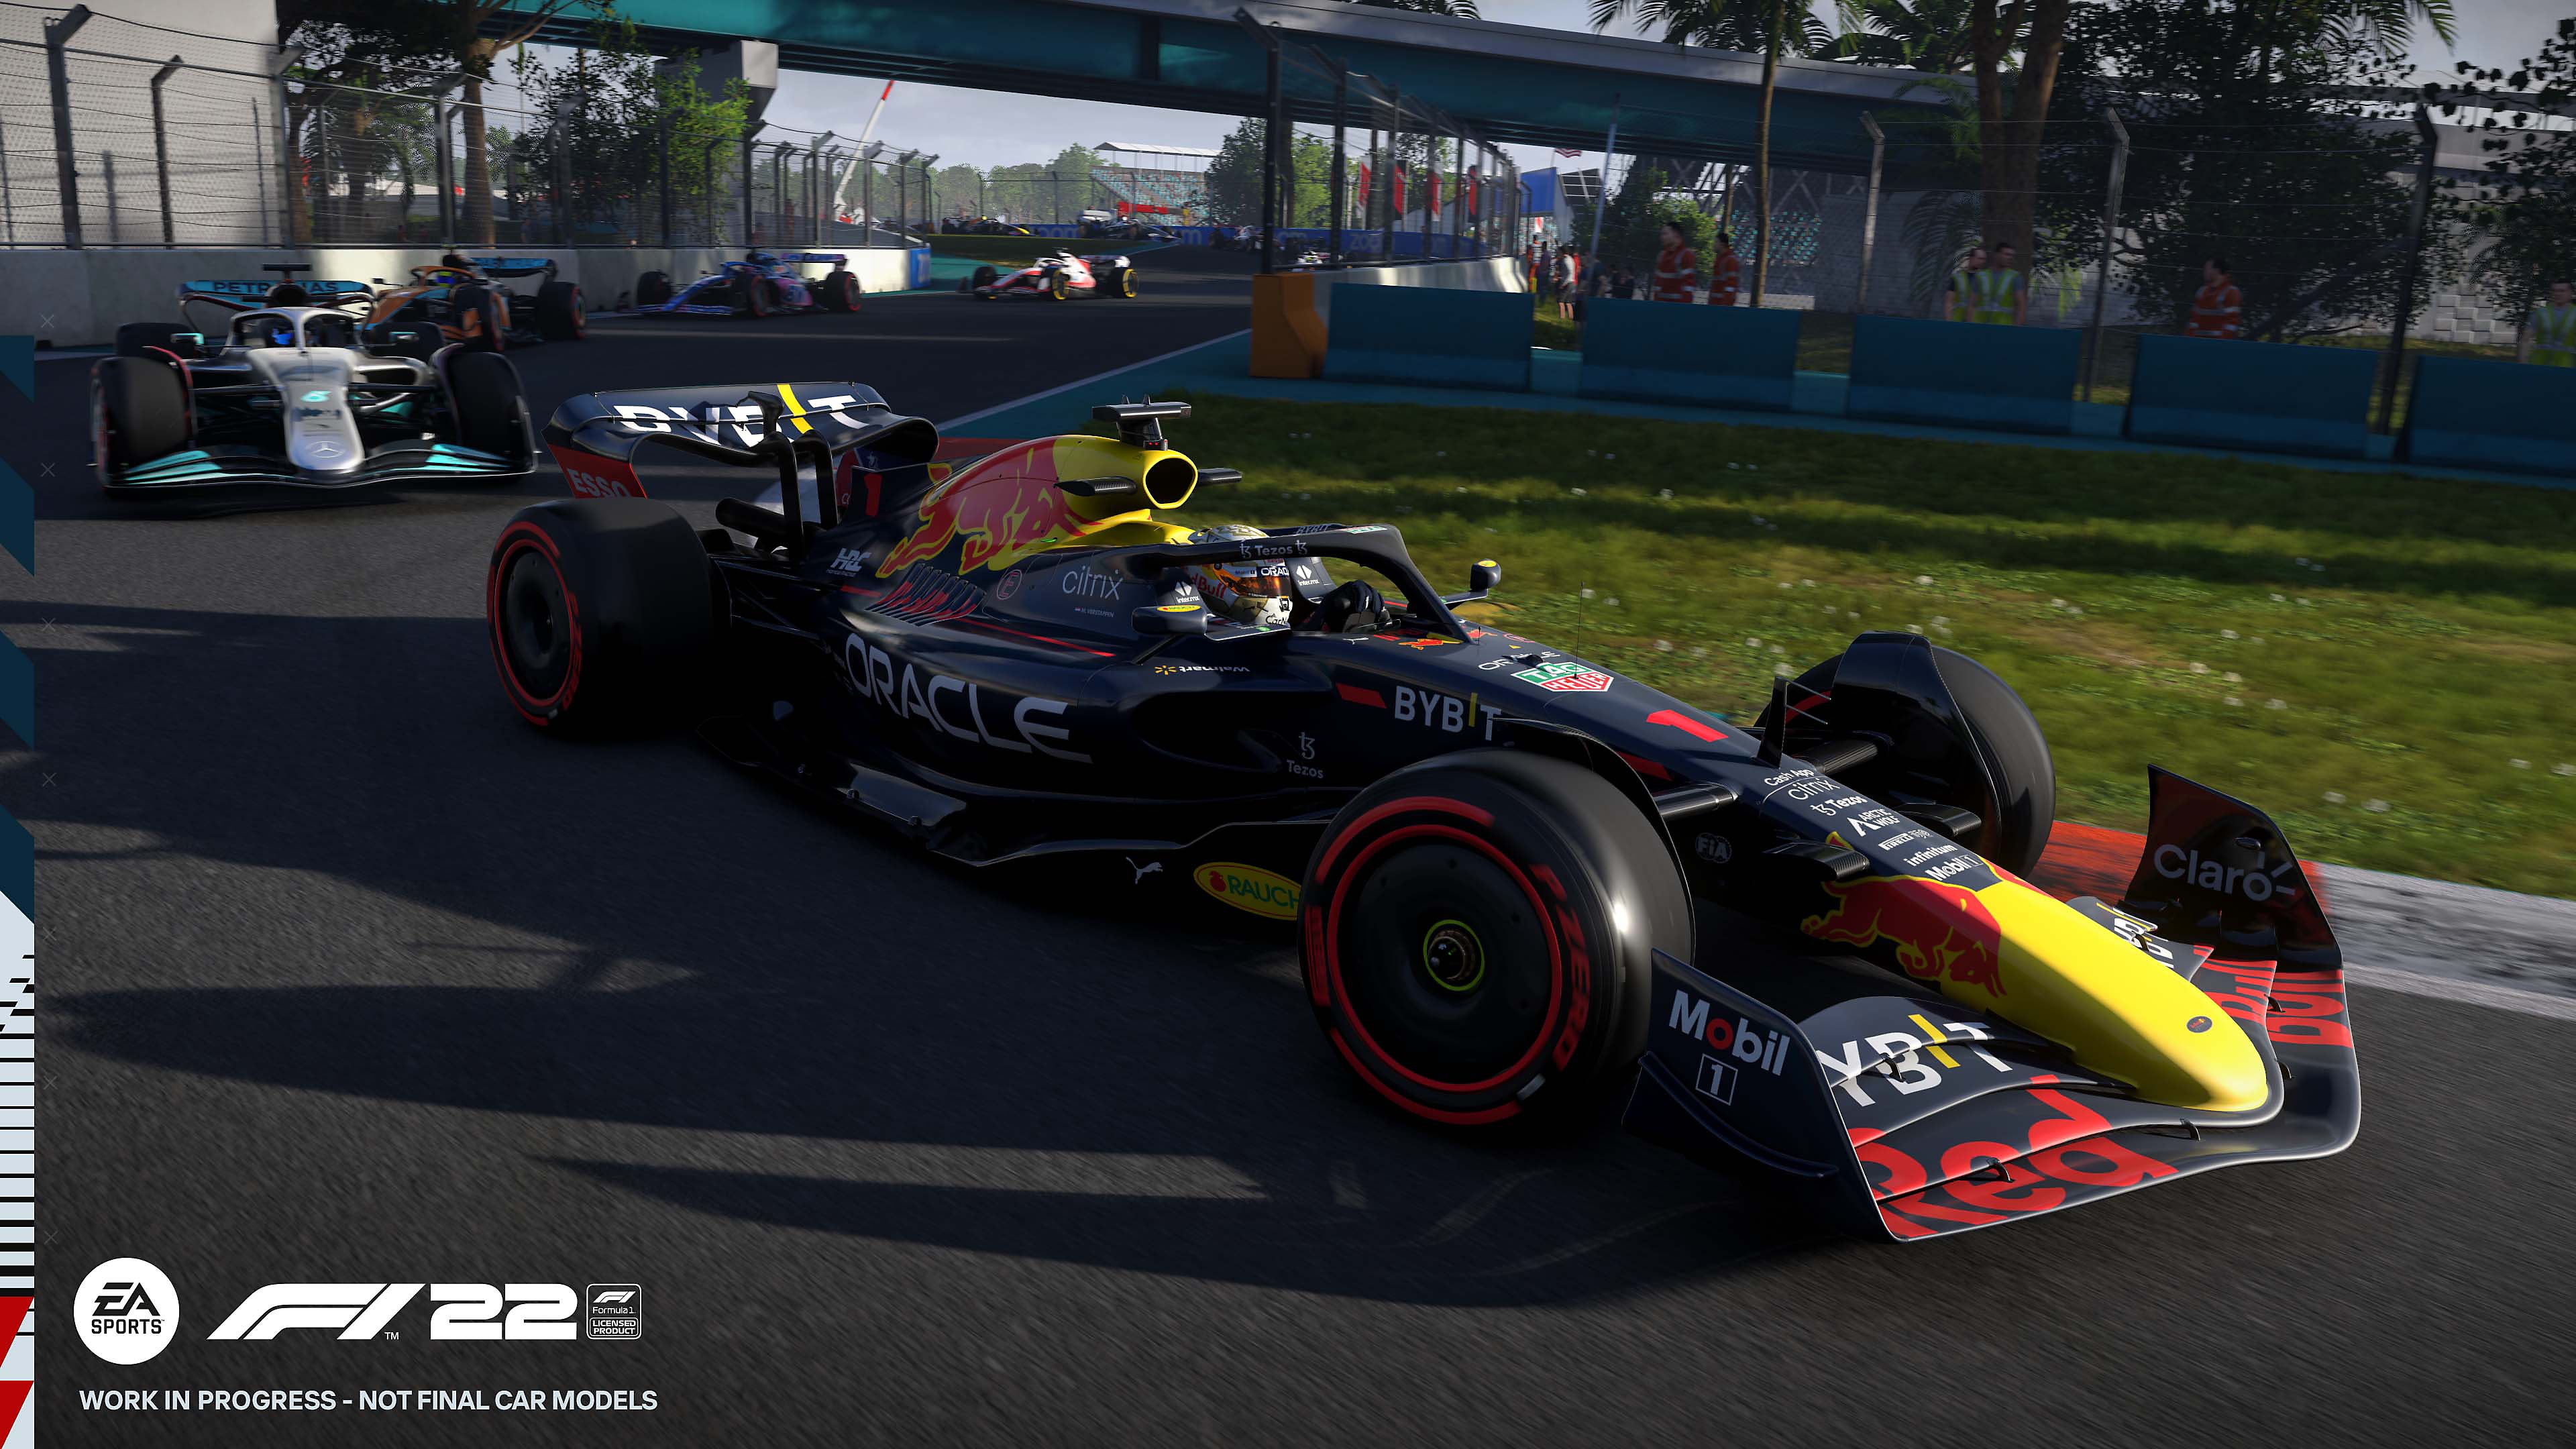 Snimka zaslona iz igre F1 22 koja prikazuje Red Bull Racing bolid